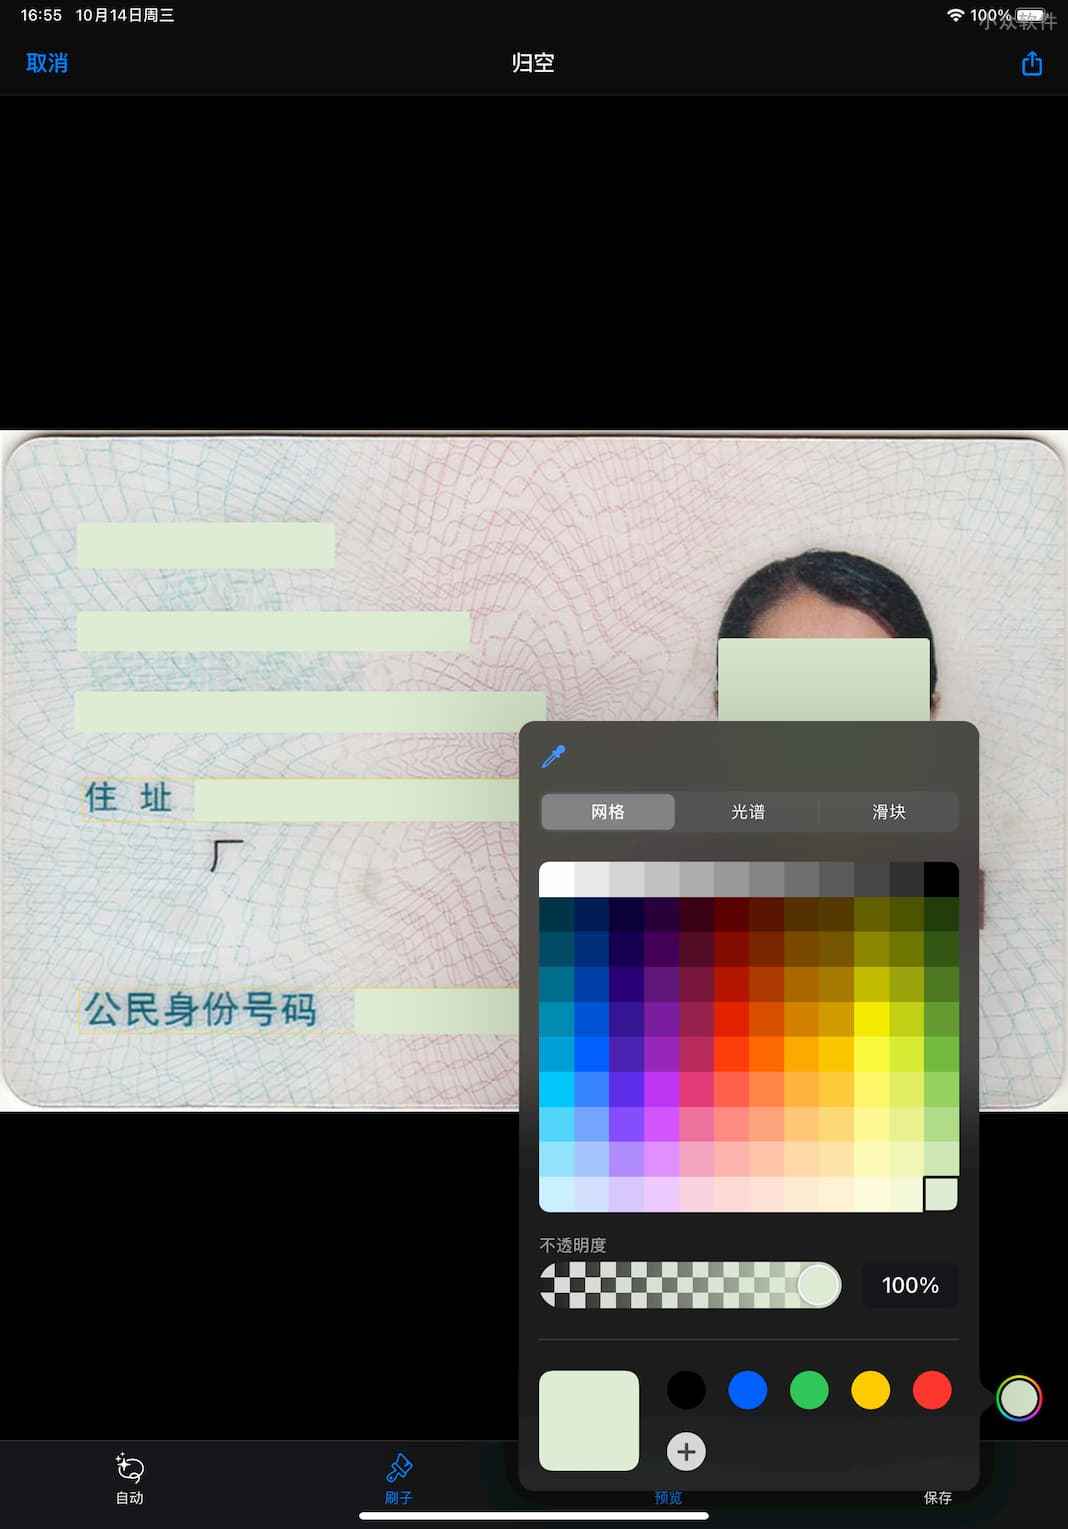 DAMA - 为图片自动打码，智能识别身份证号、手机号、人脸等隐私内容[iPhone] 4